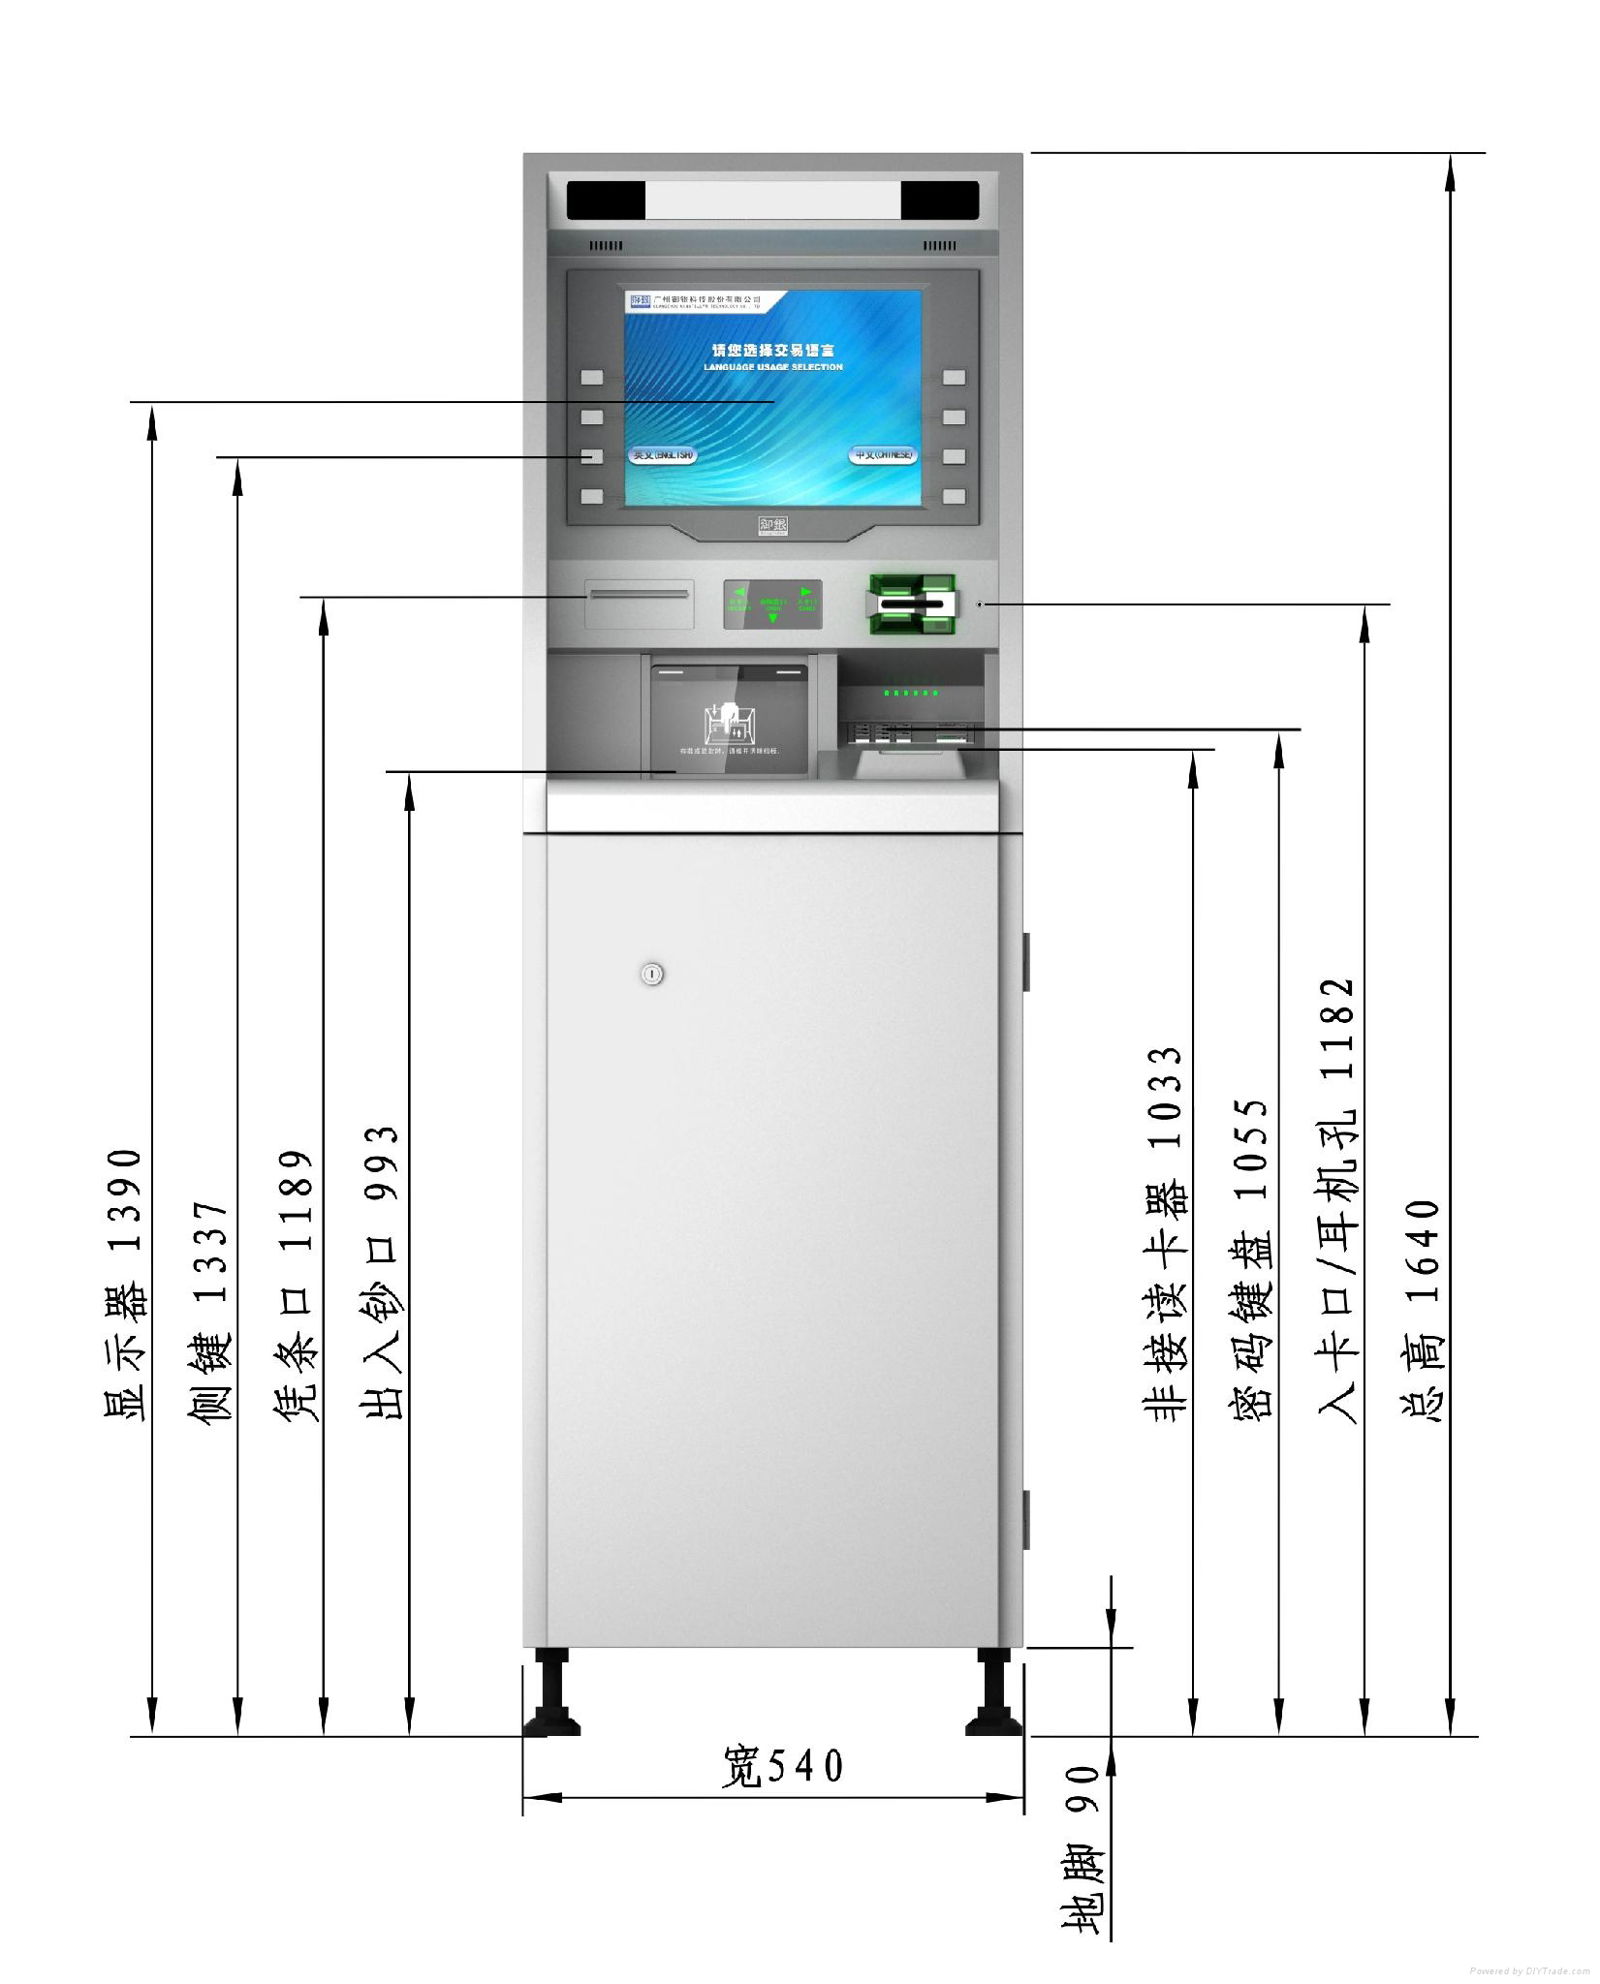 Lobby ATM 3